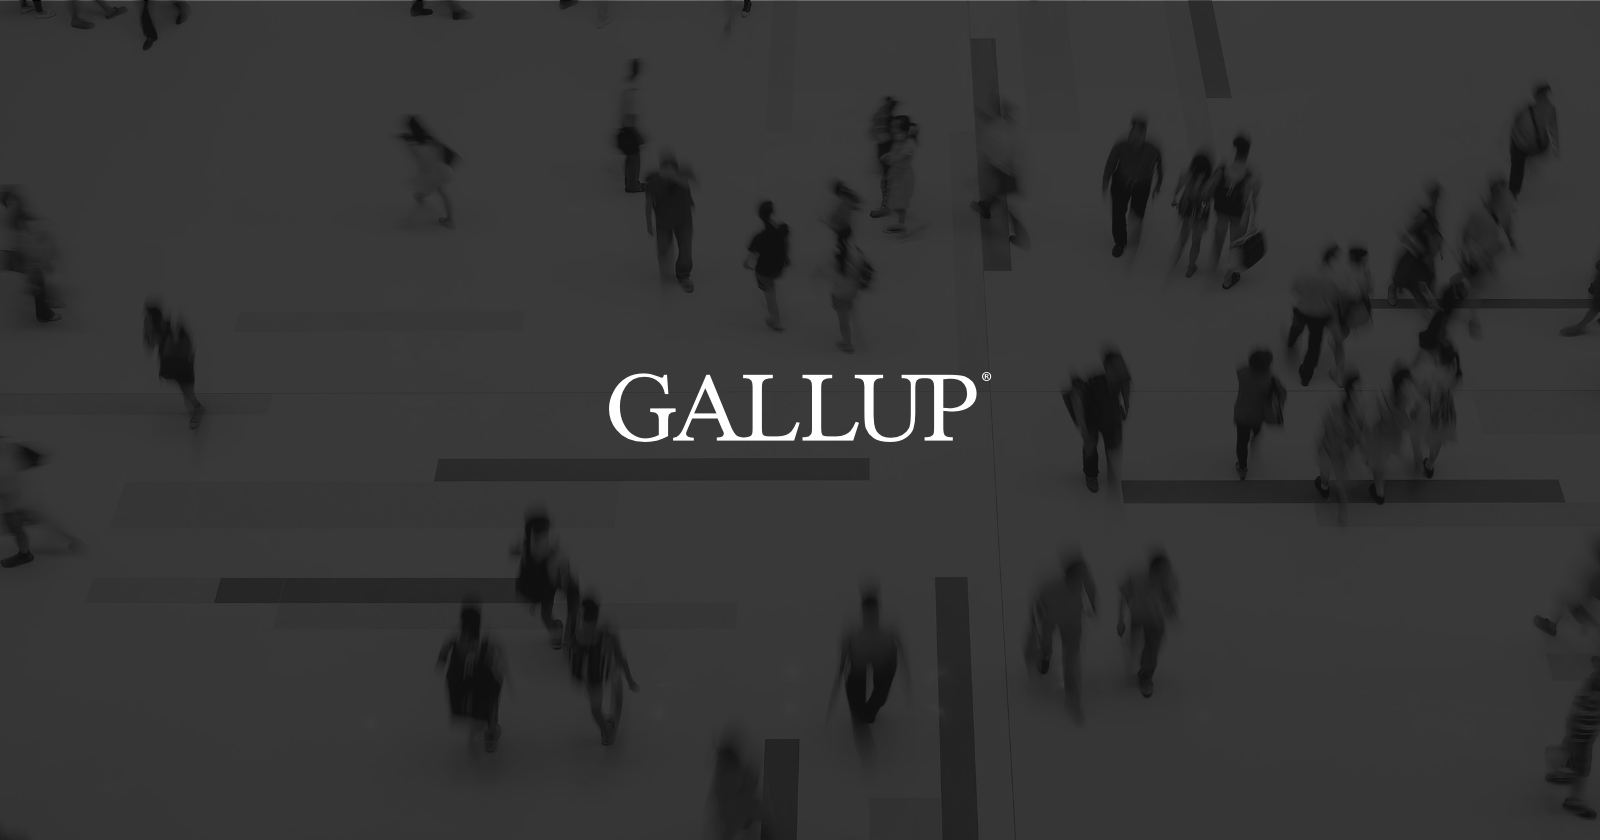 news.gallup.com